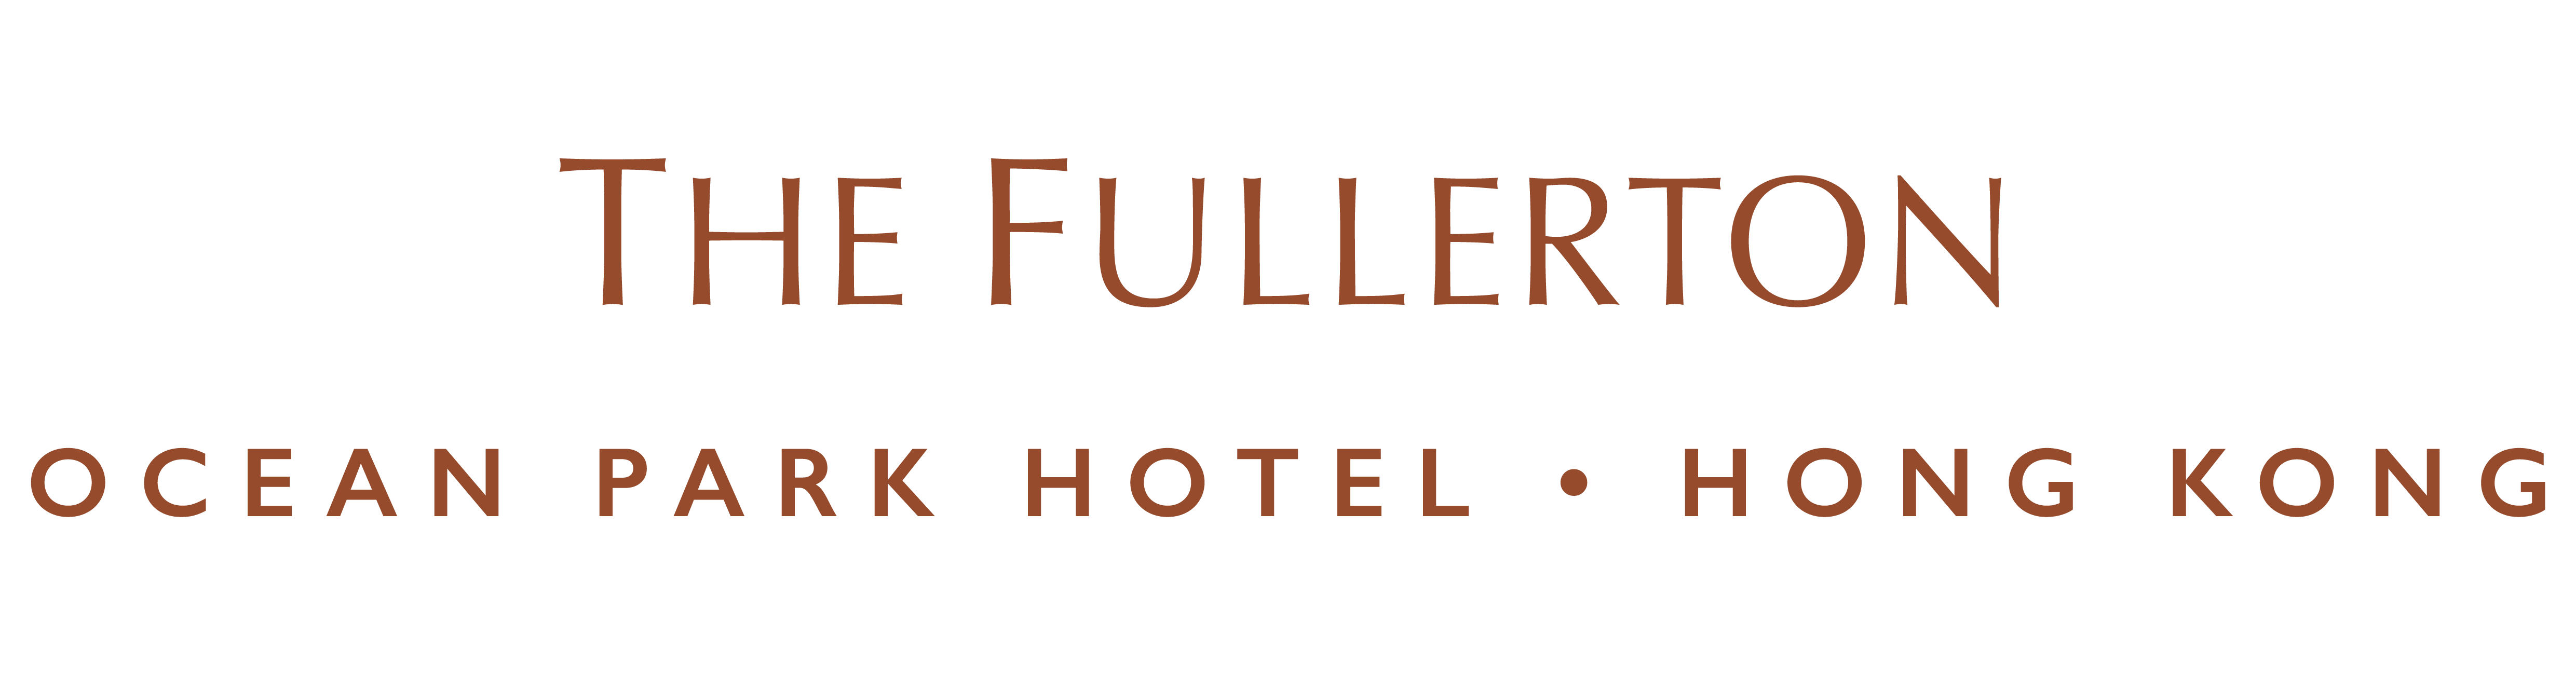 FullertonHotel_logo